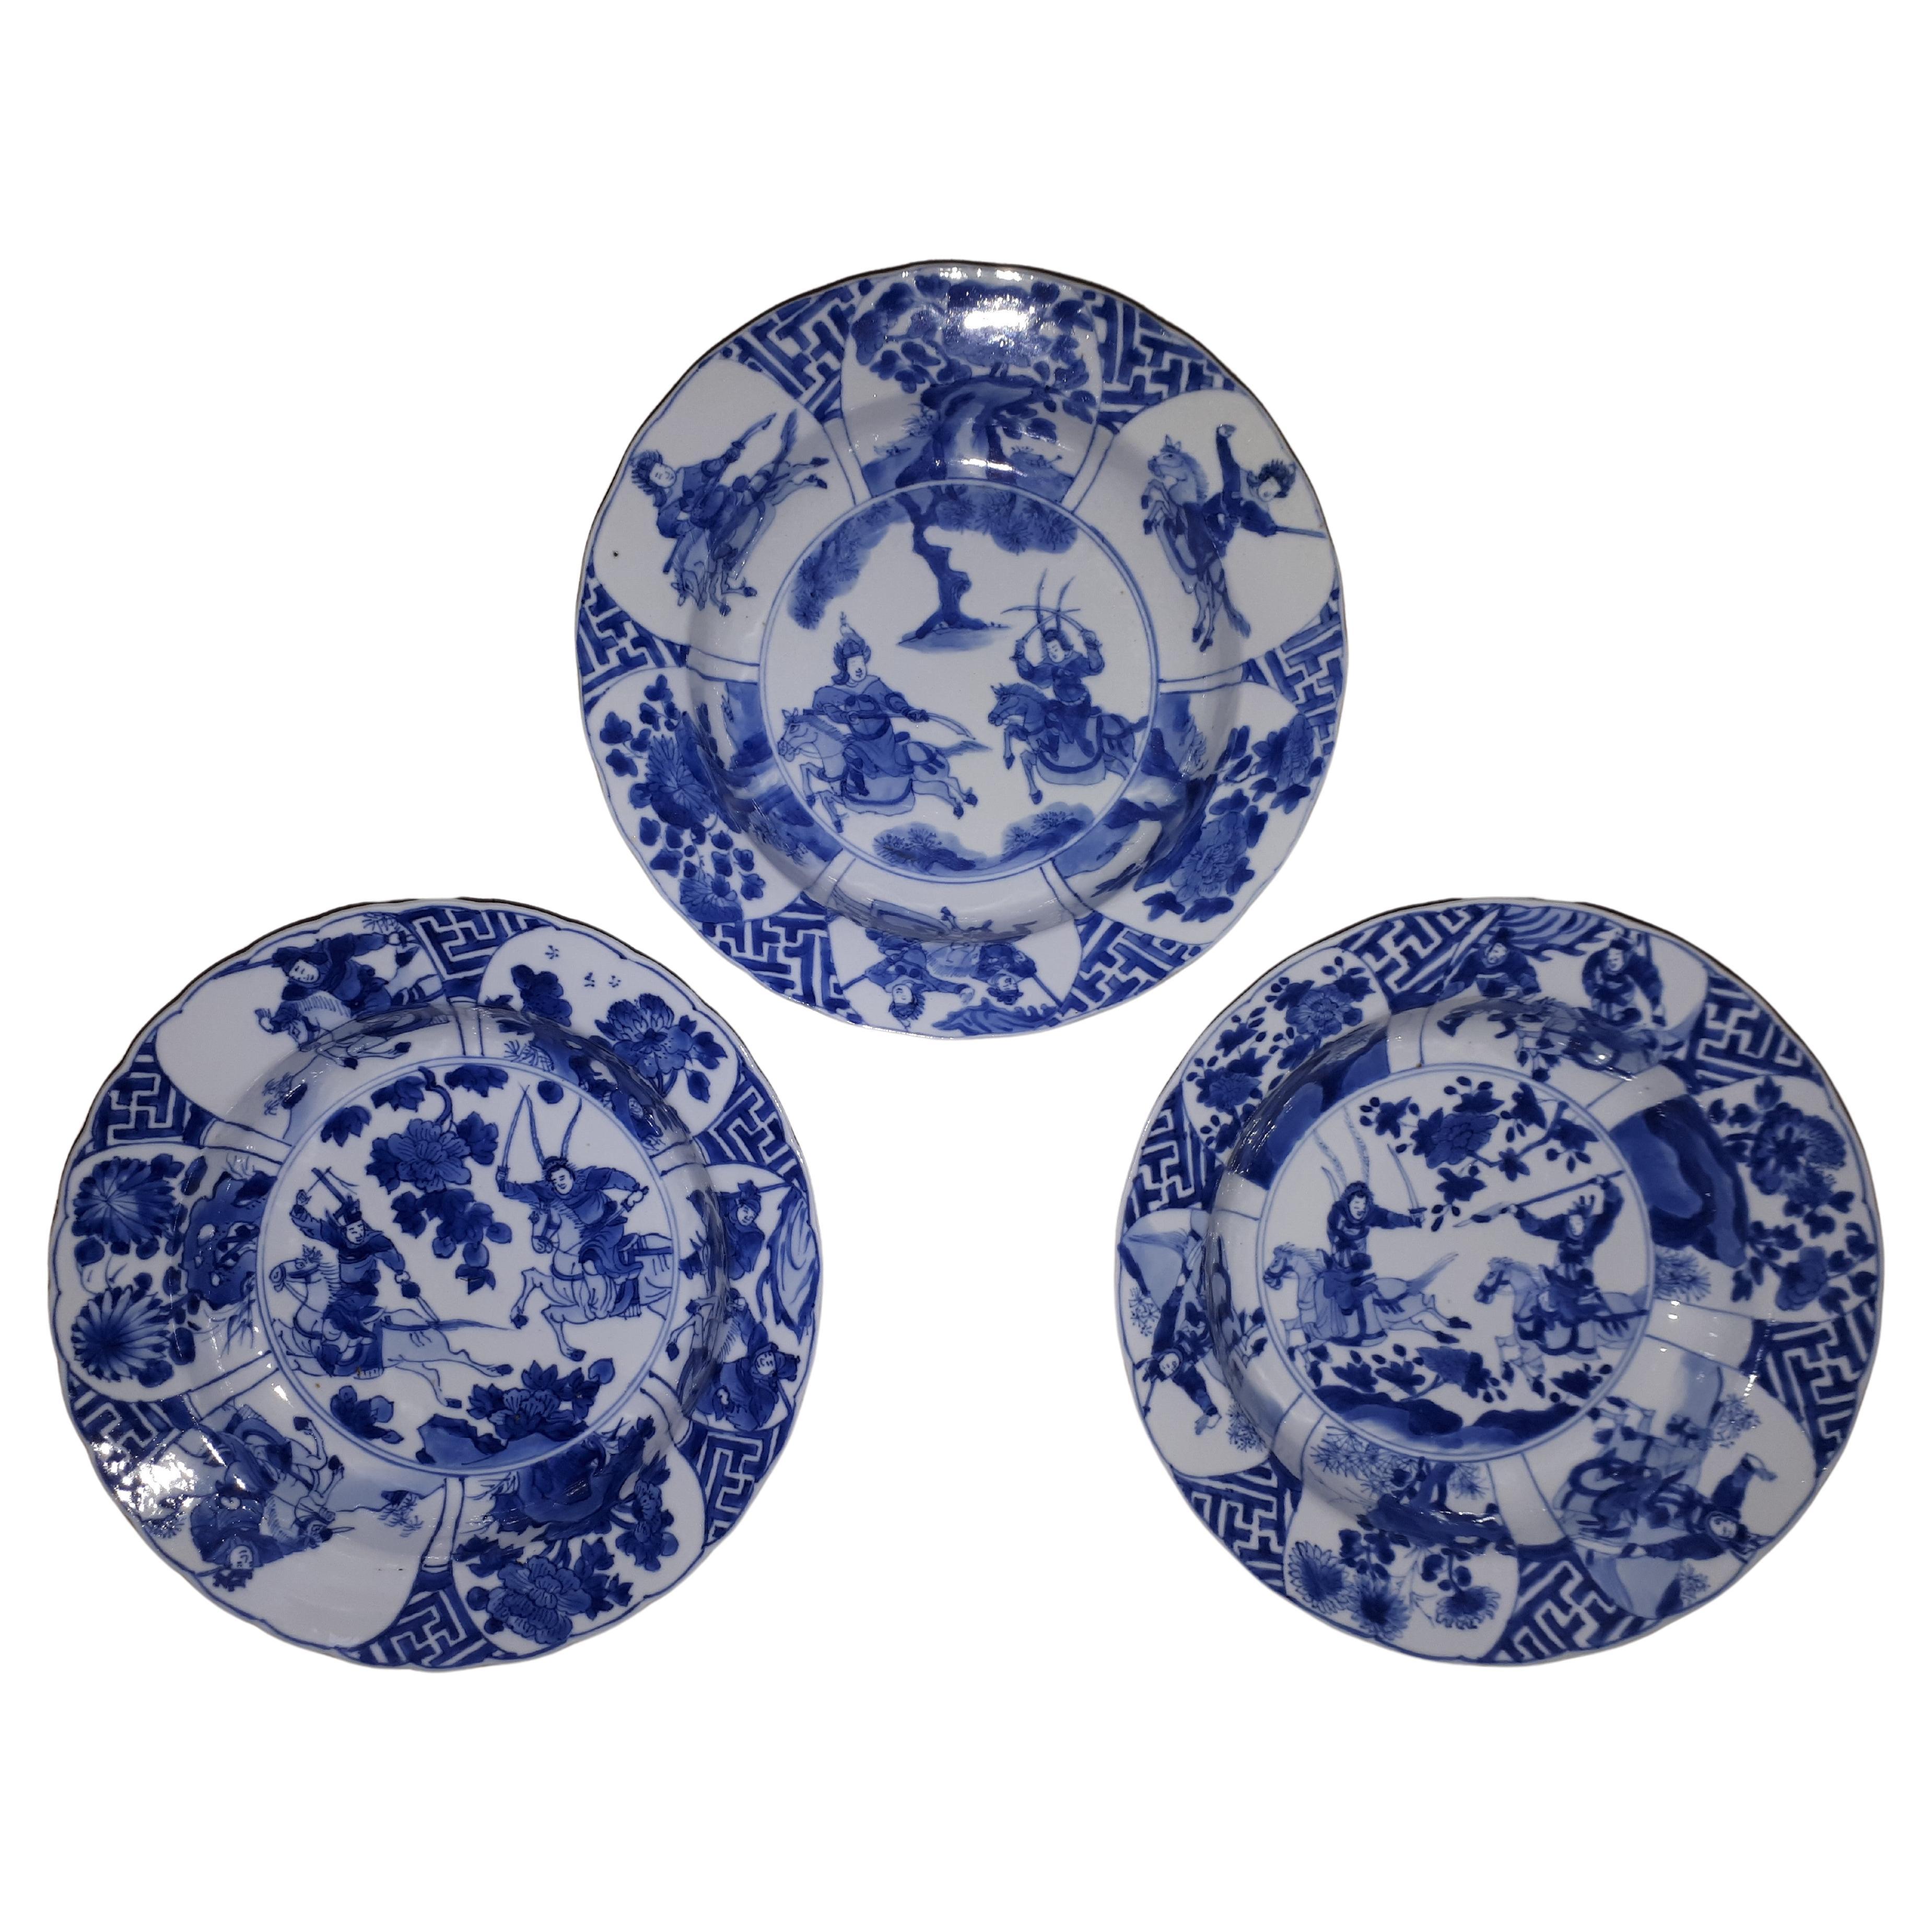 Assiettes chinoises bleues et blanches décorées de guerriers, période Kangxi en Chine